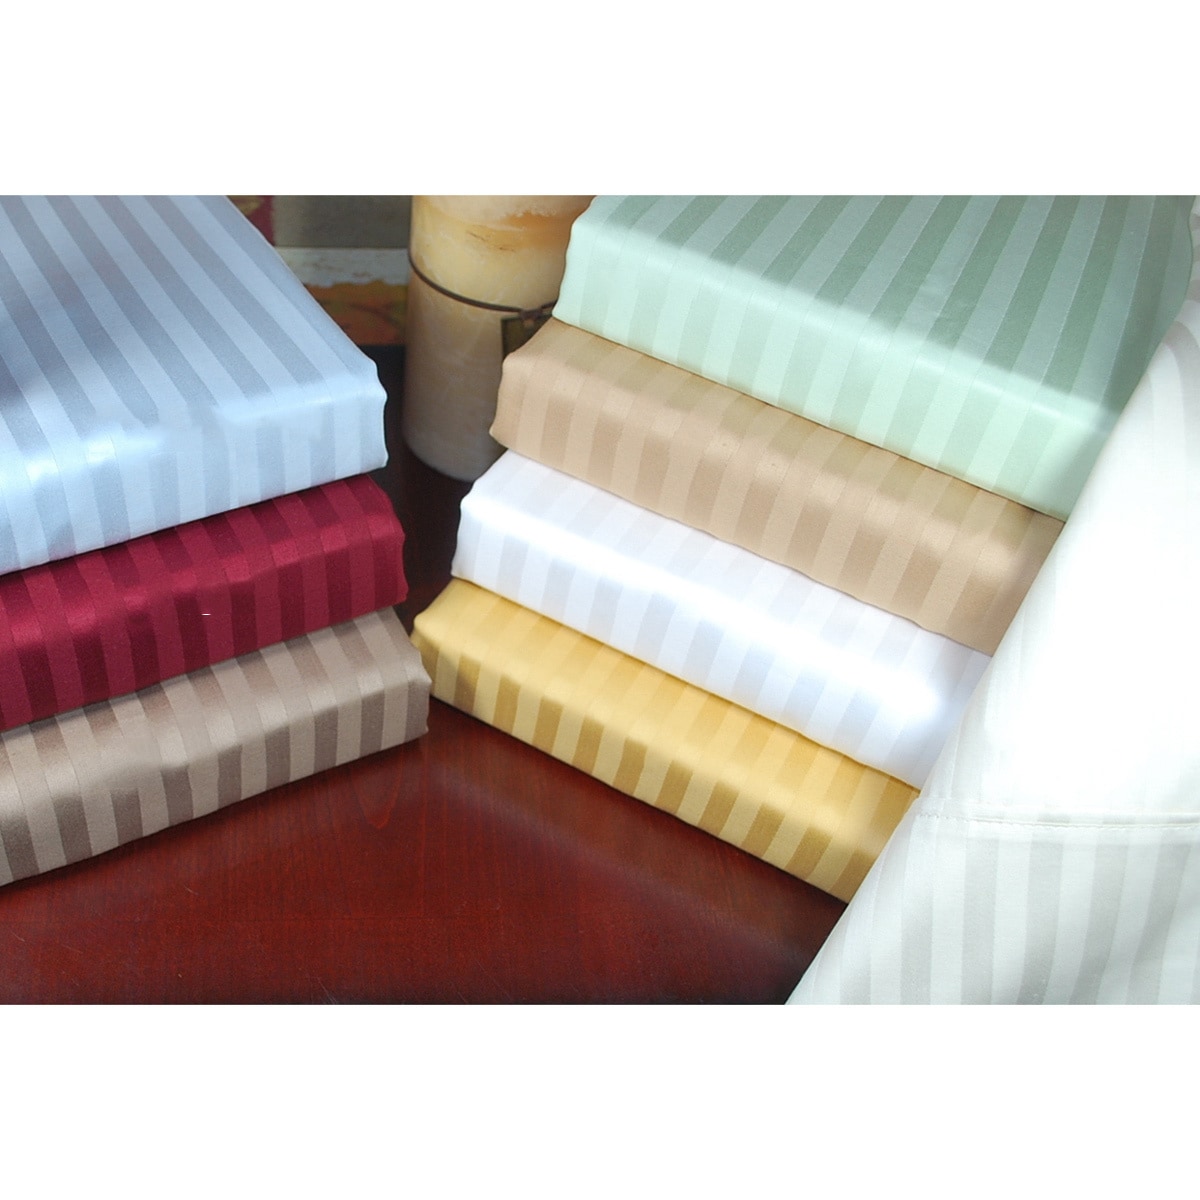 Egyptian Cotton 300 Thread Count Stripe Pillowcases (set Of 2)